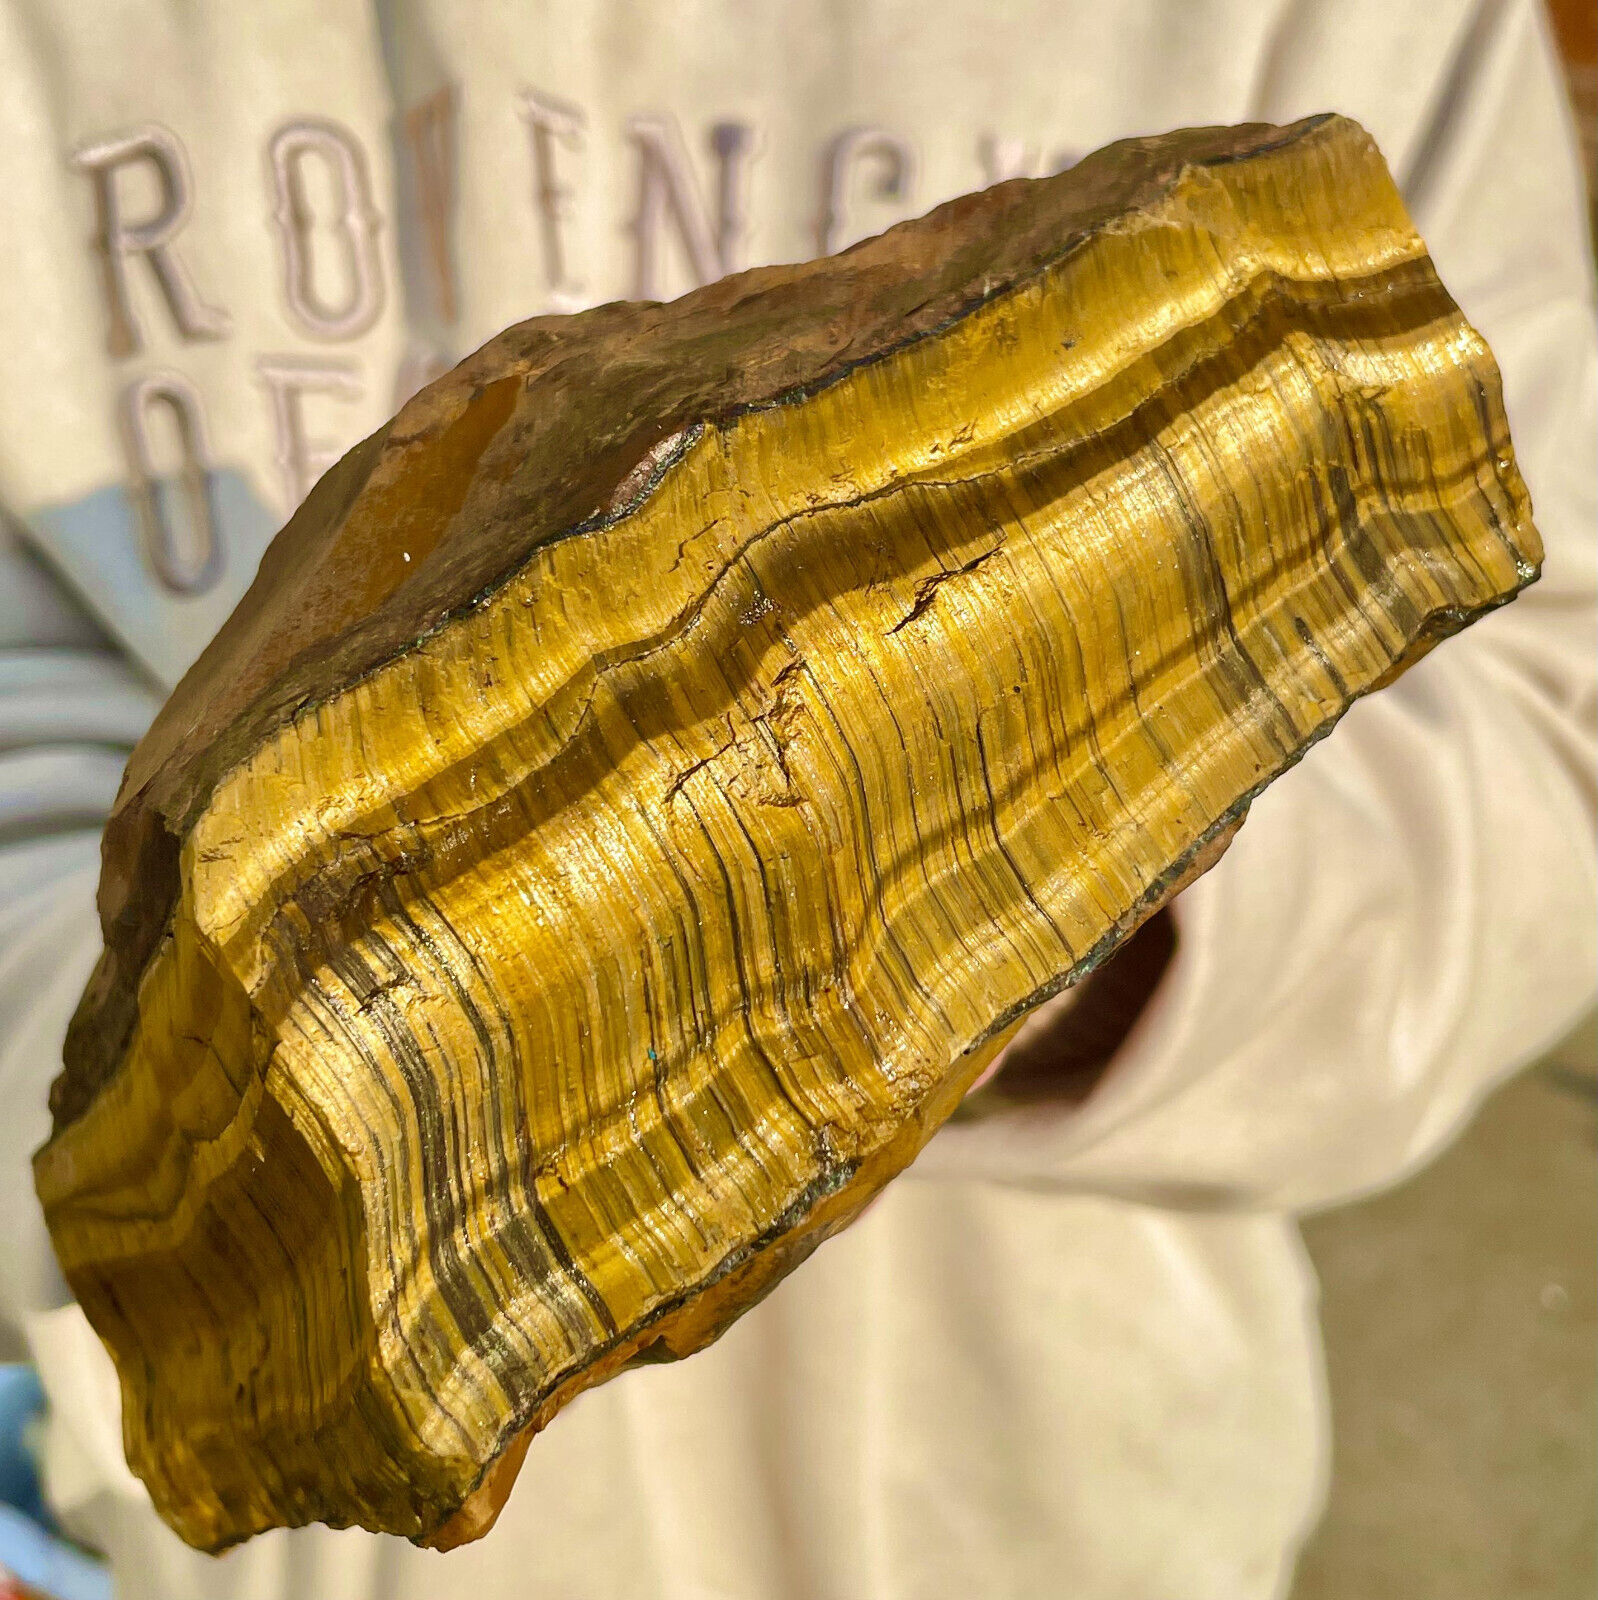 7.7LB Large Golden Tiger'S Eye Rock Quartz Crystal Mineral Specimen Metaphysics